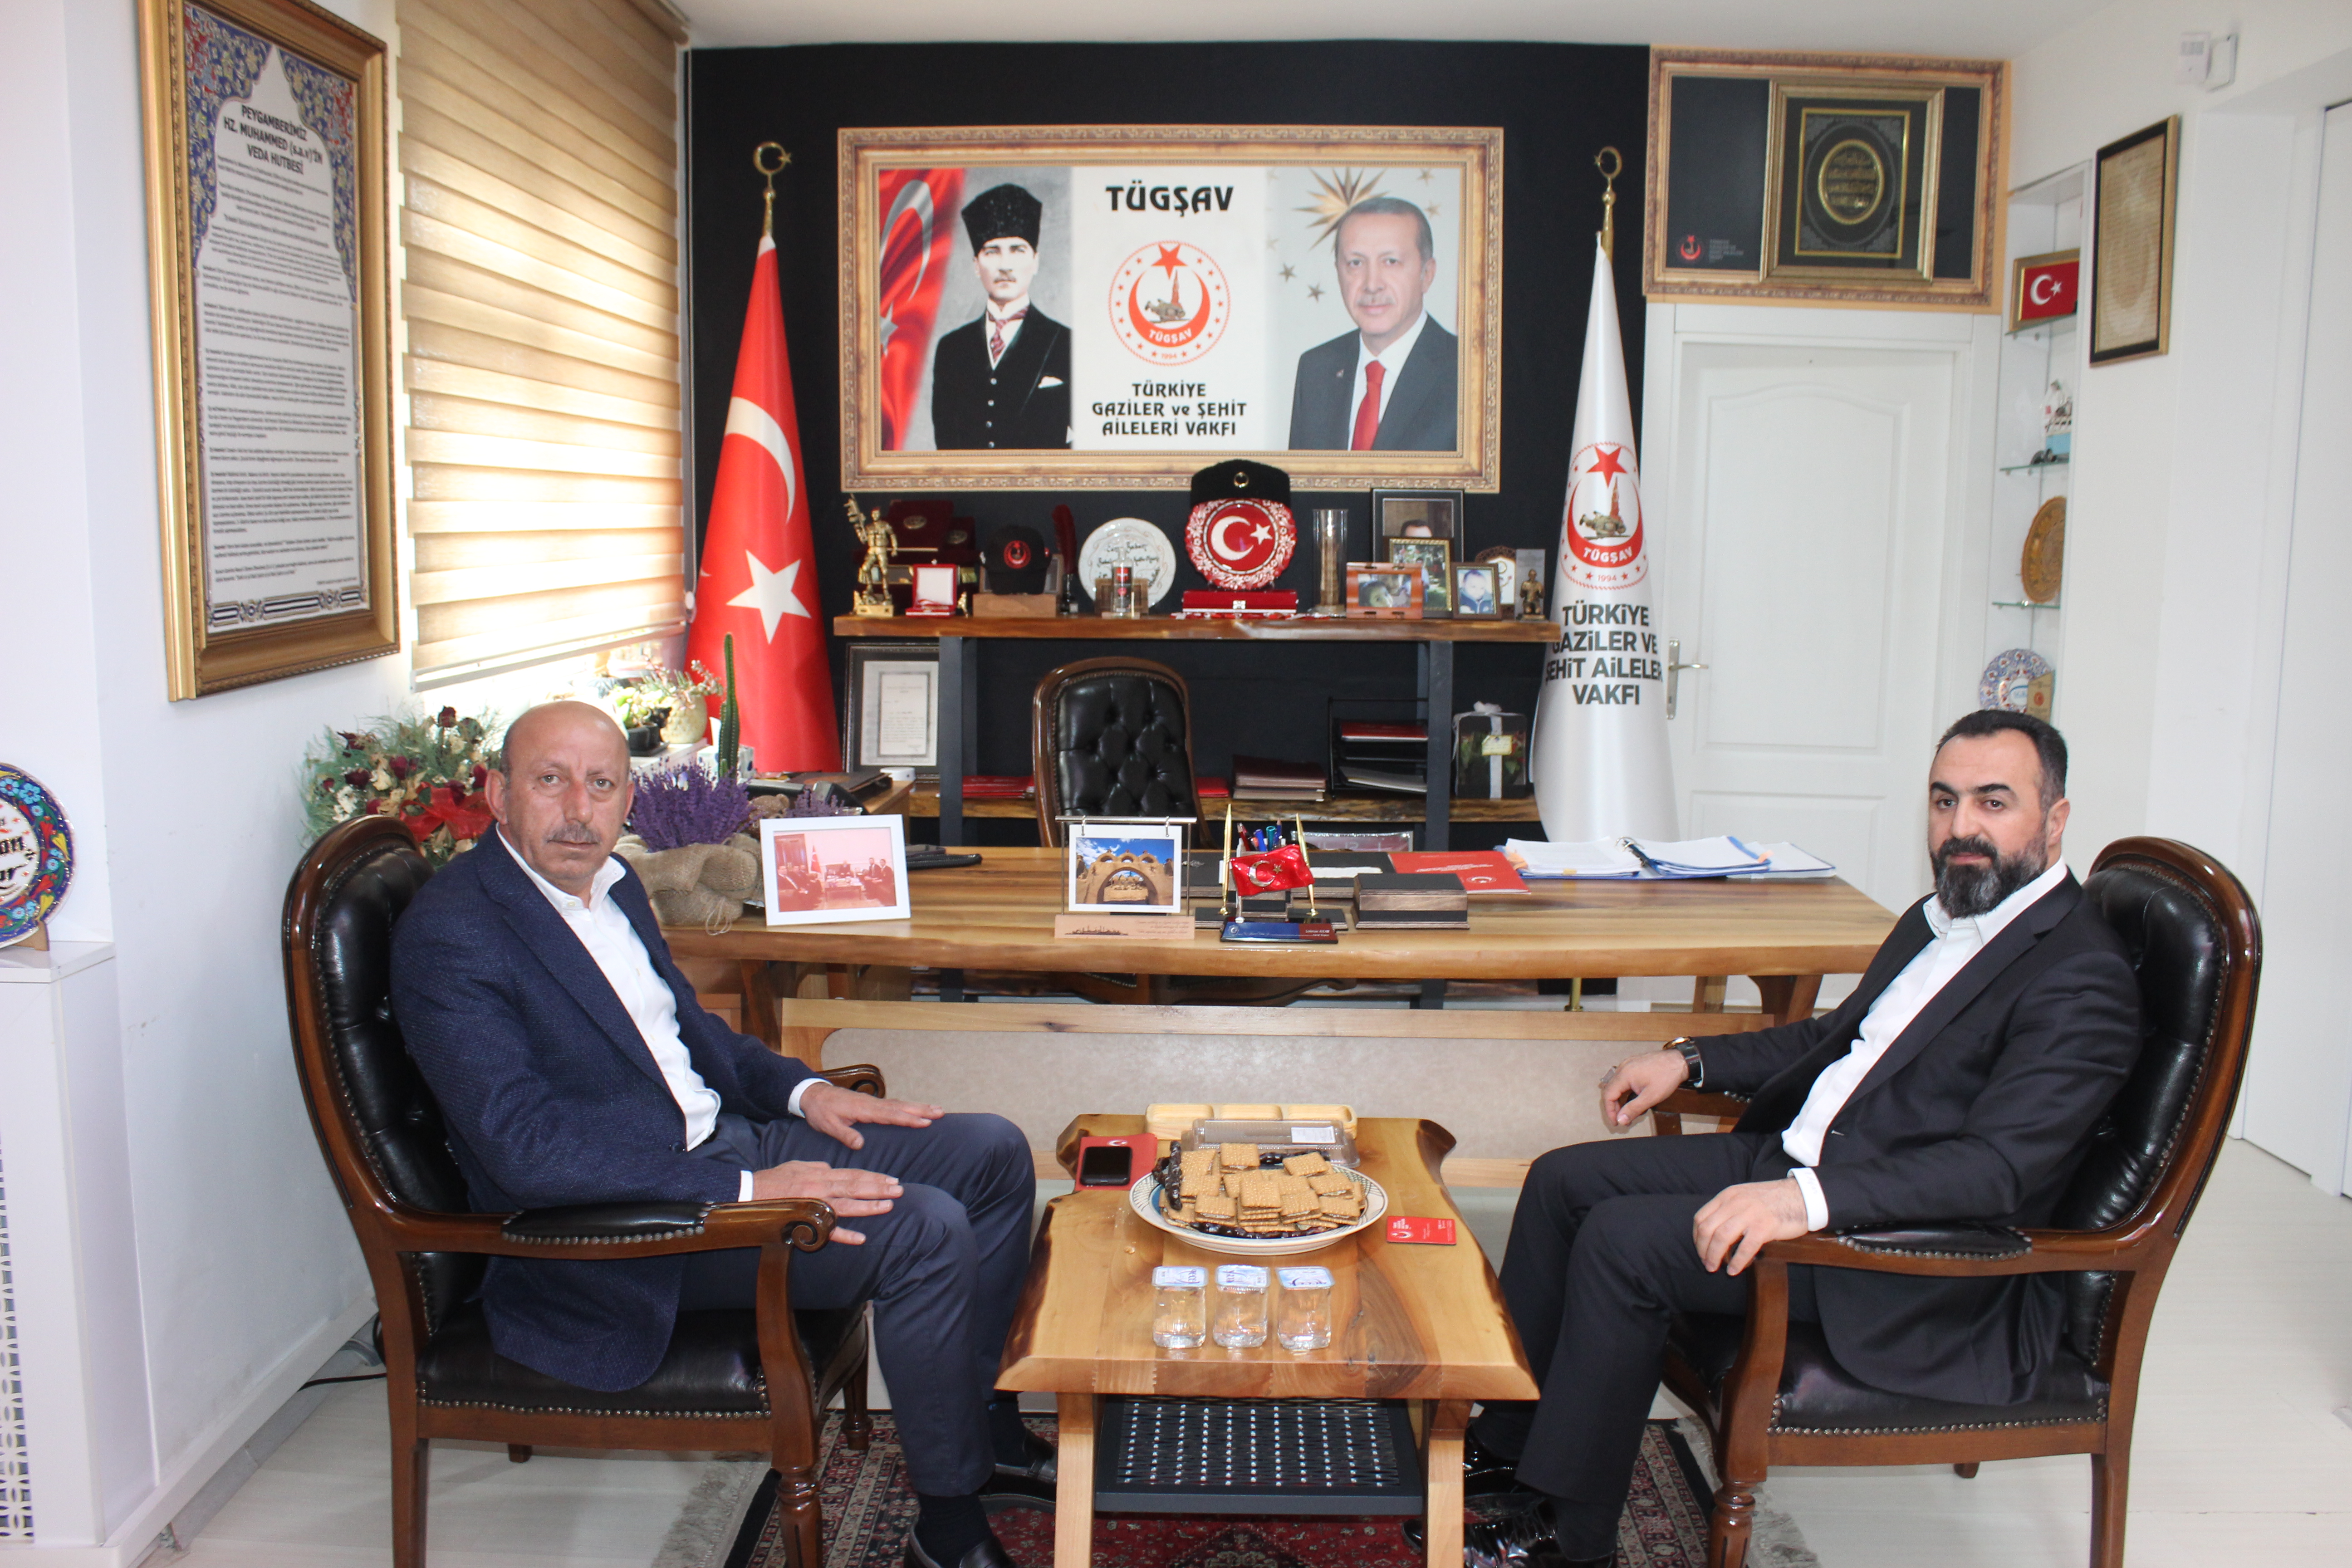 Diyarbakır'dan Vakfımızı ziyarete gelen Edip Elik beyefendiye,Nezaket ziyaretleri için teşekkür ederiz.